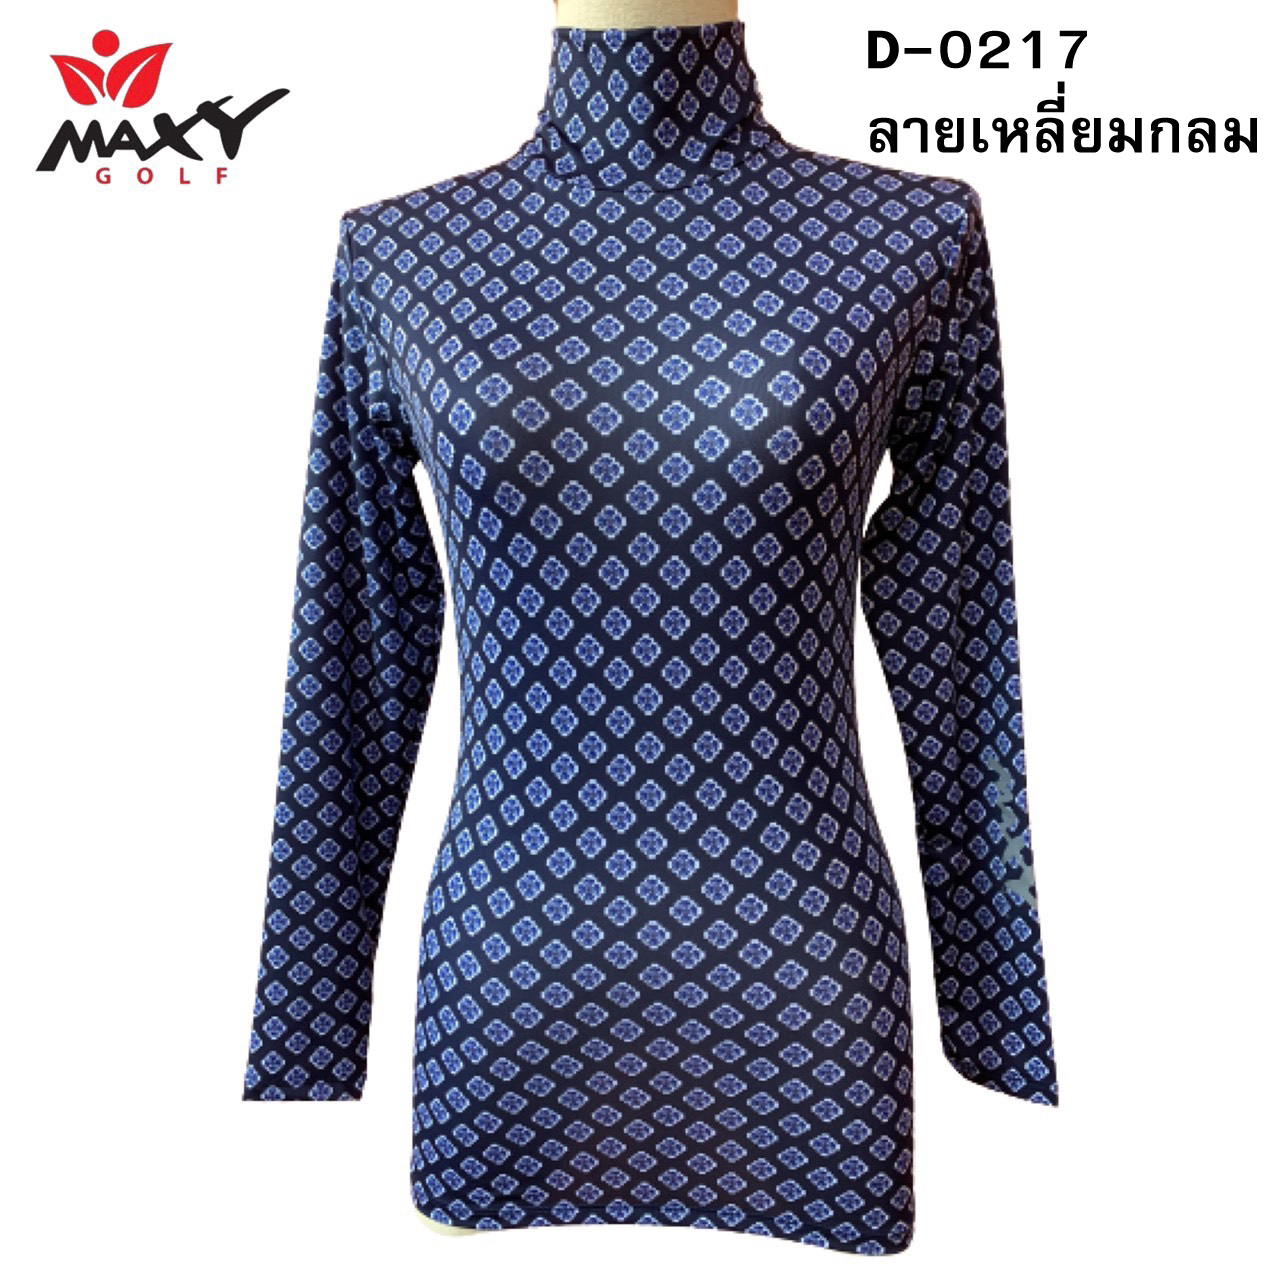 เสื้อบอดี้ฟิตกันแดด(คอเต่า)สำหรับผู้หญิง ยี่ห้อ MAXY GOLF (รหัส D-0217 ลายเหลี่ยมกลม)